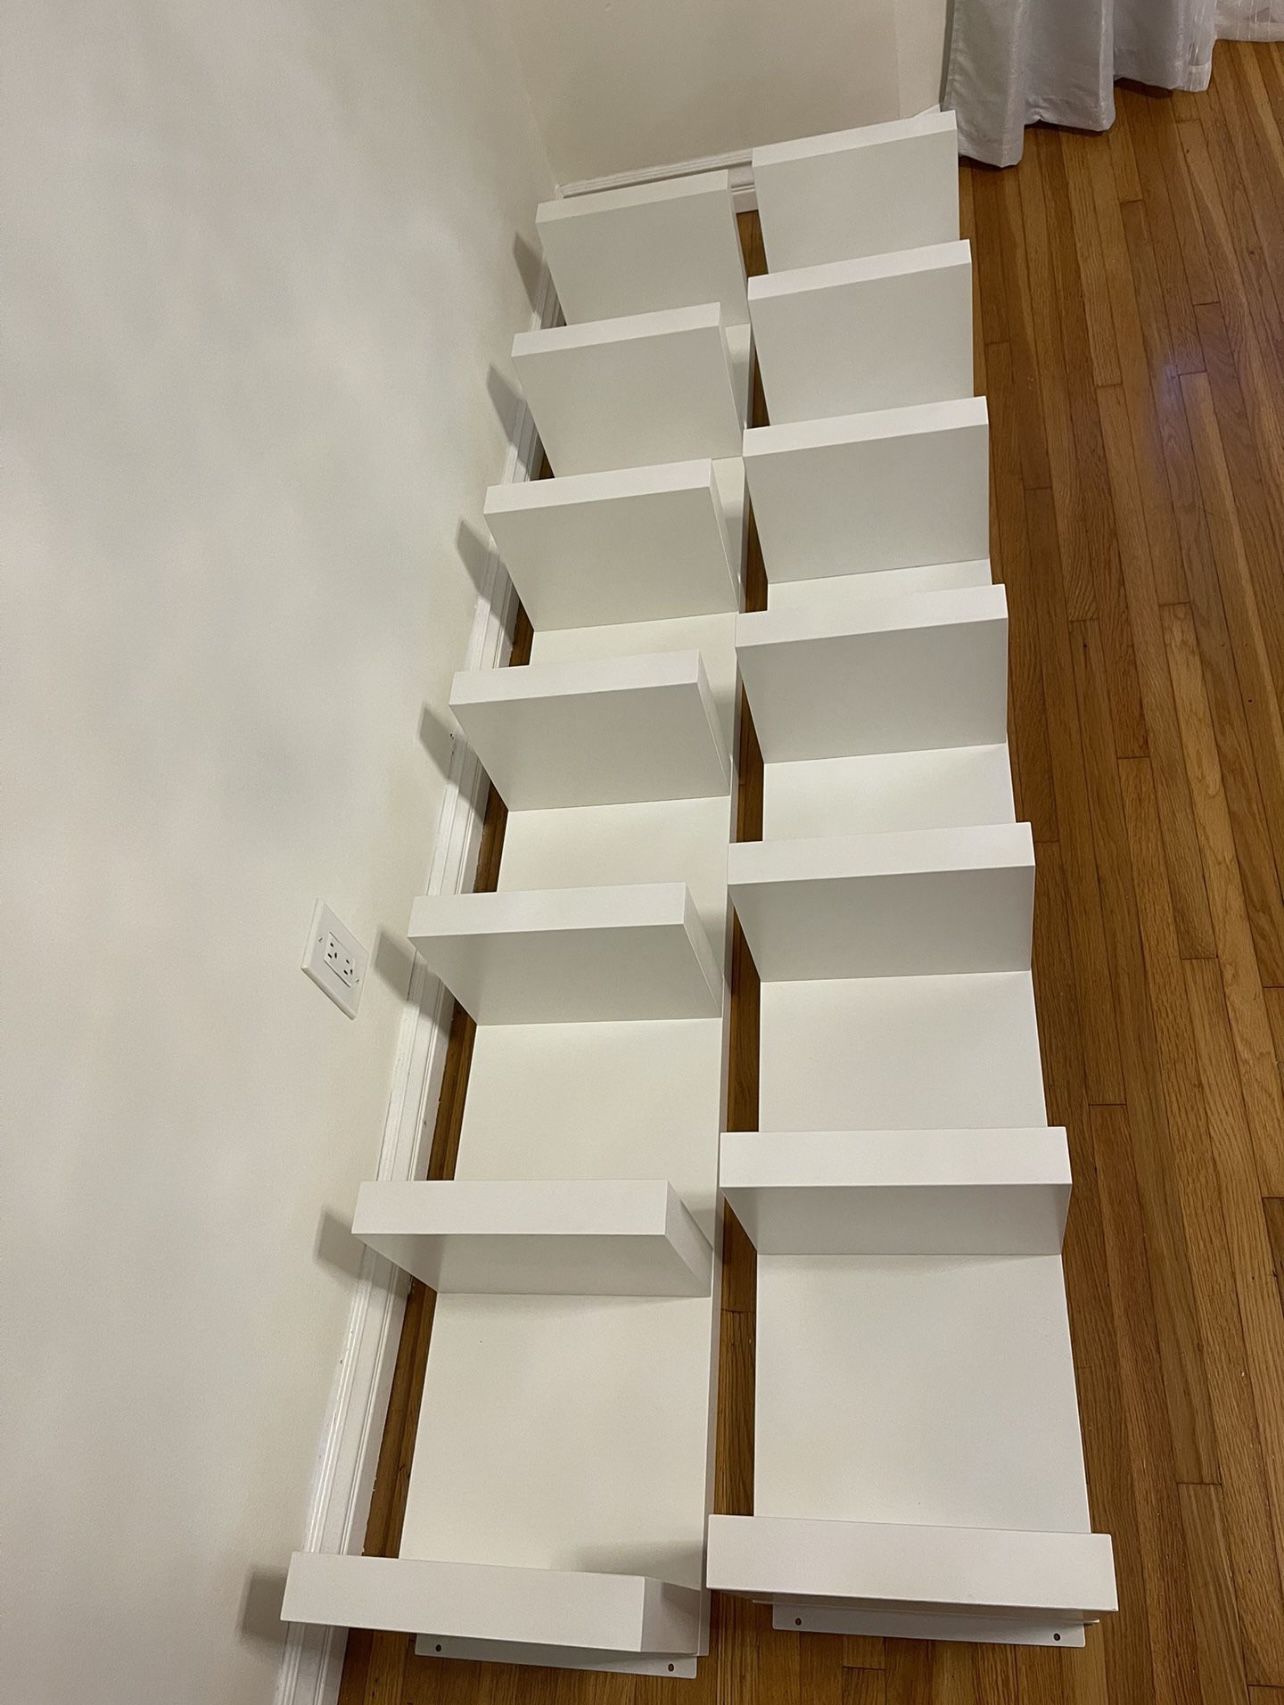 Ikea Wall Shelves